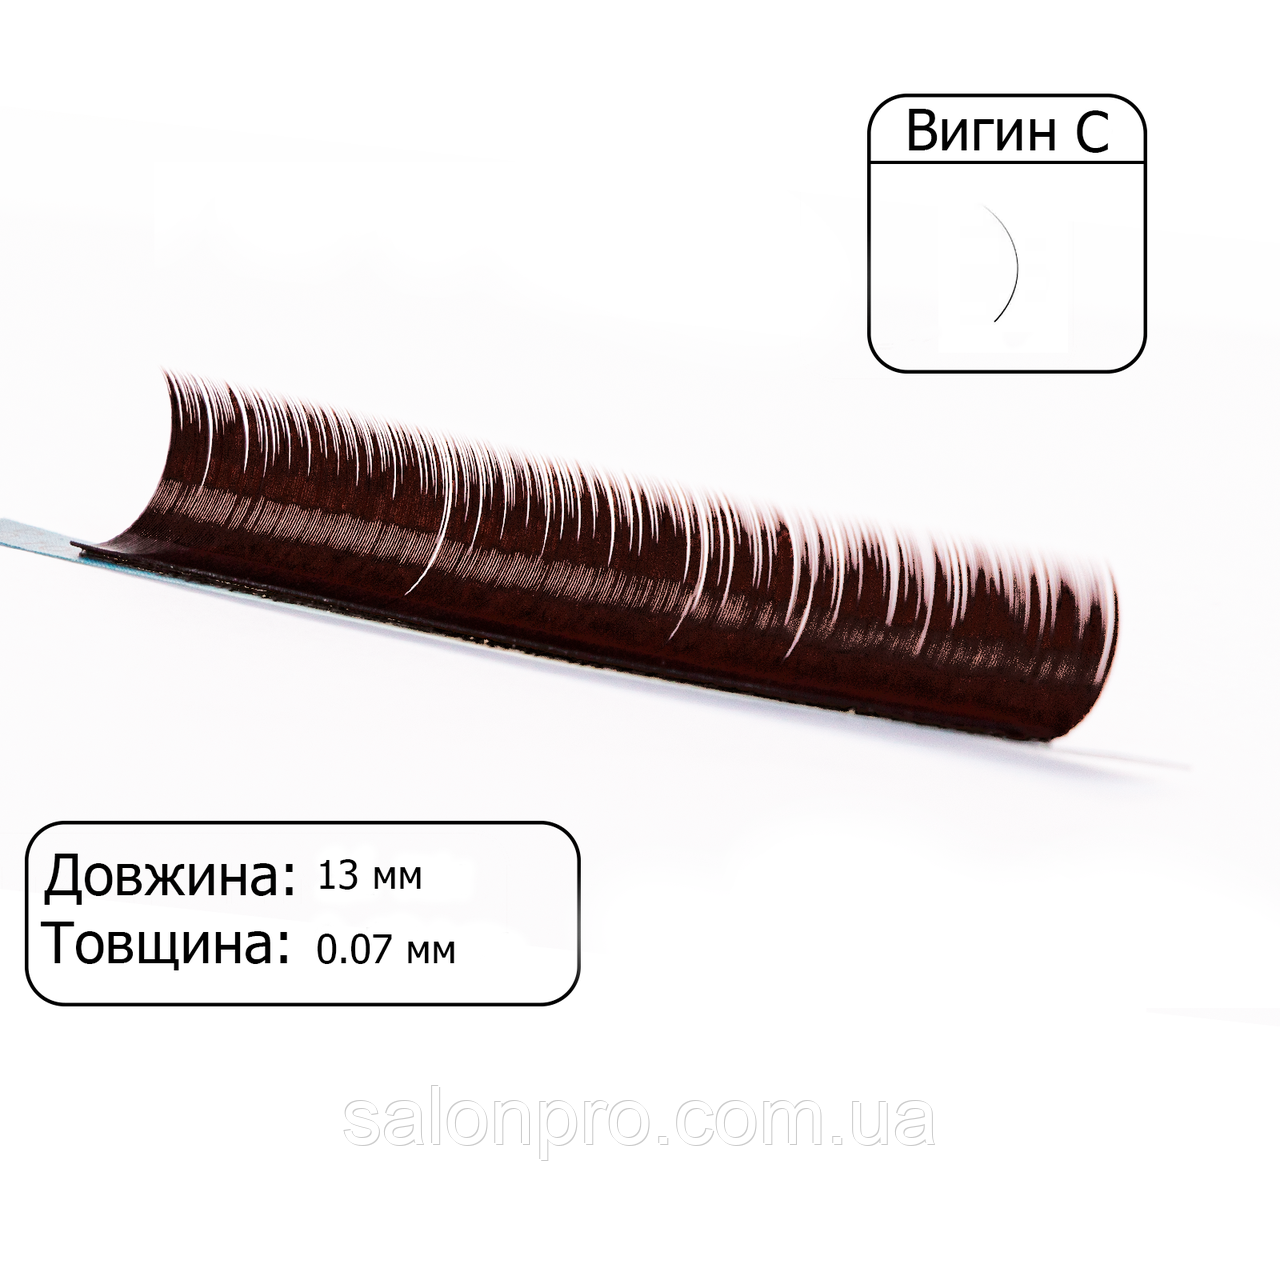 Вії коричневі VILMY, 1 стрічка VIYA Chocolate вигин C, товщина 0,07, довжина 13 мм